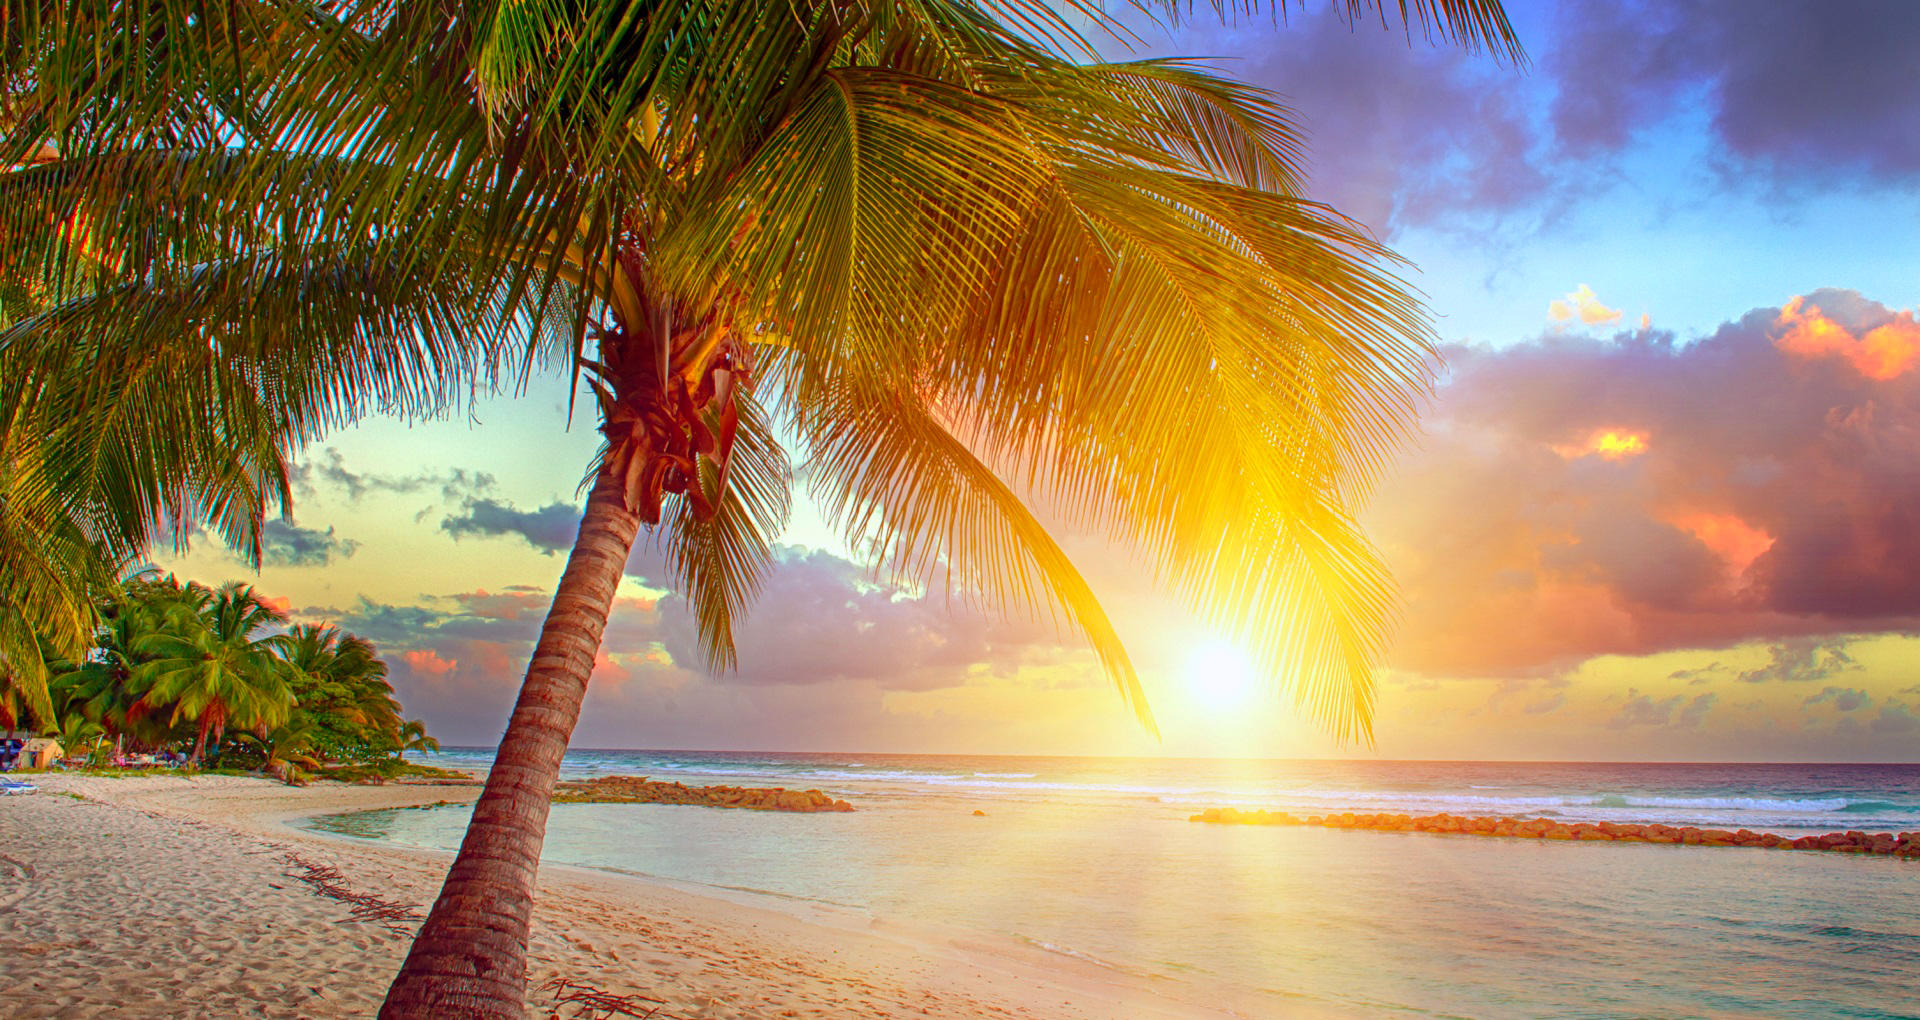 Обои тропики солнечный свет вид с берега - бесплатные картинки на Fonwall